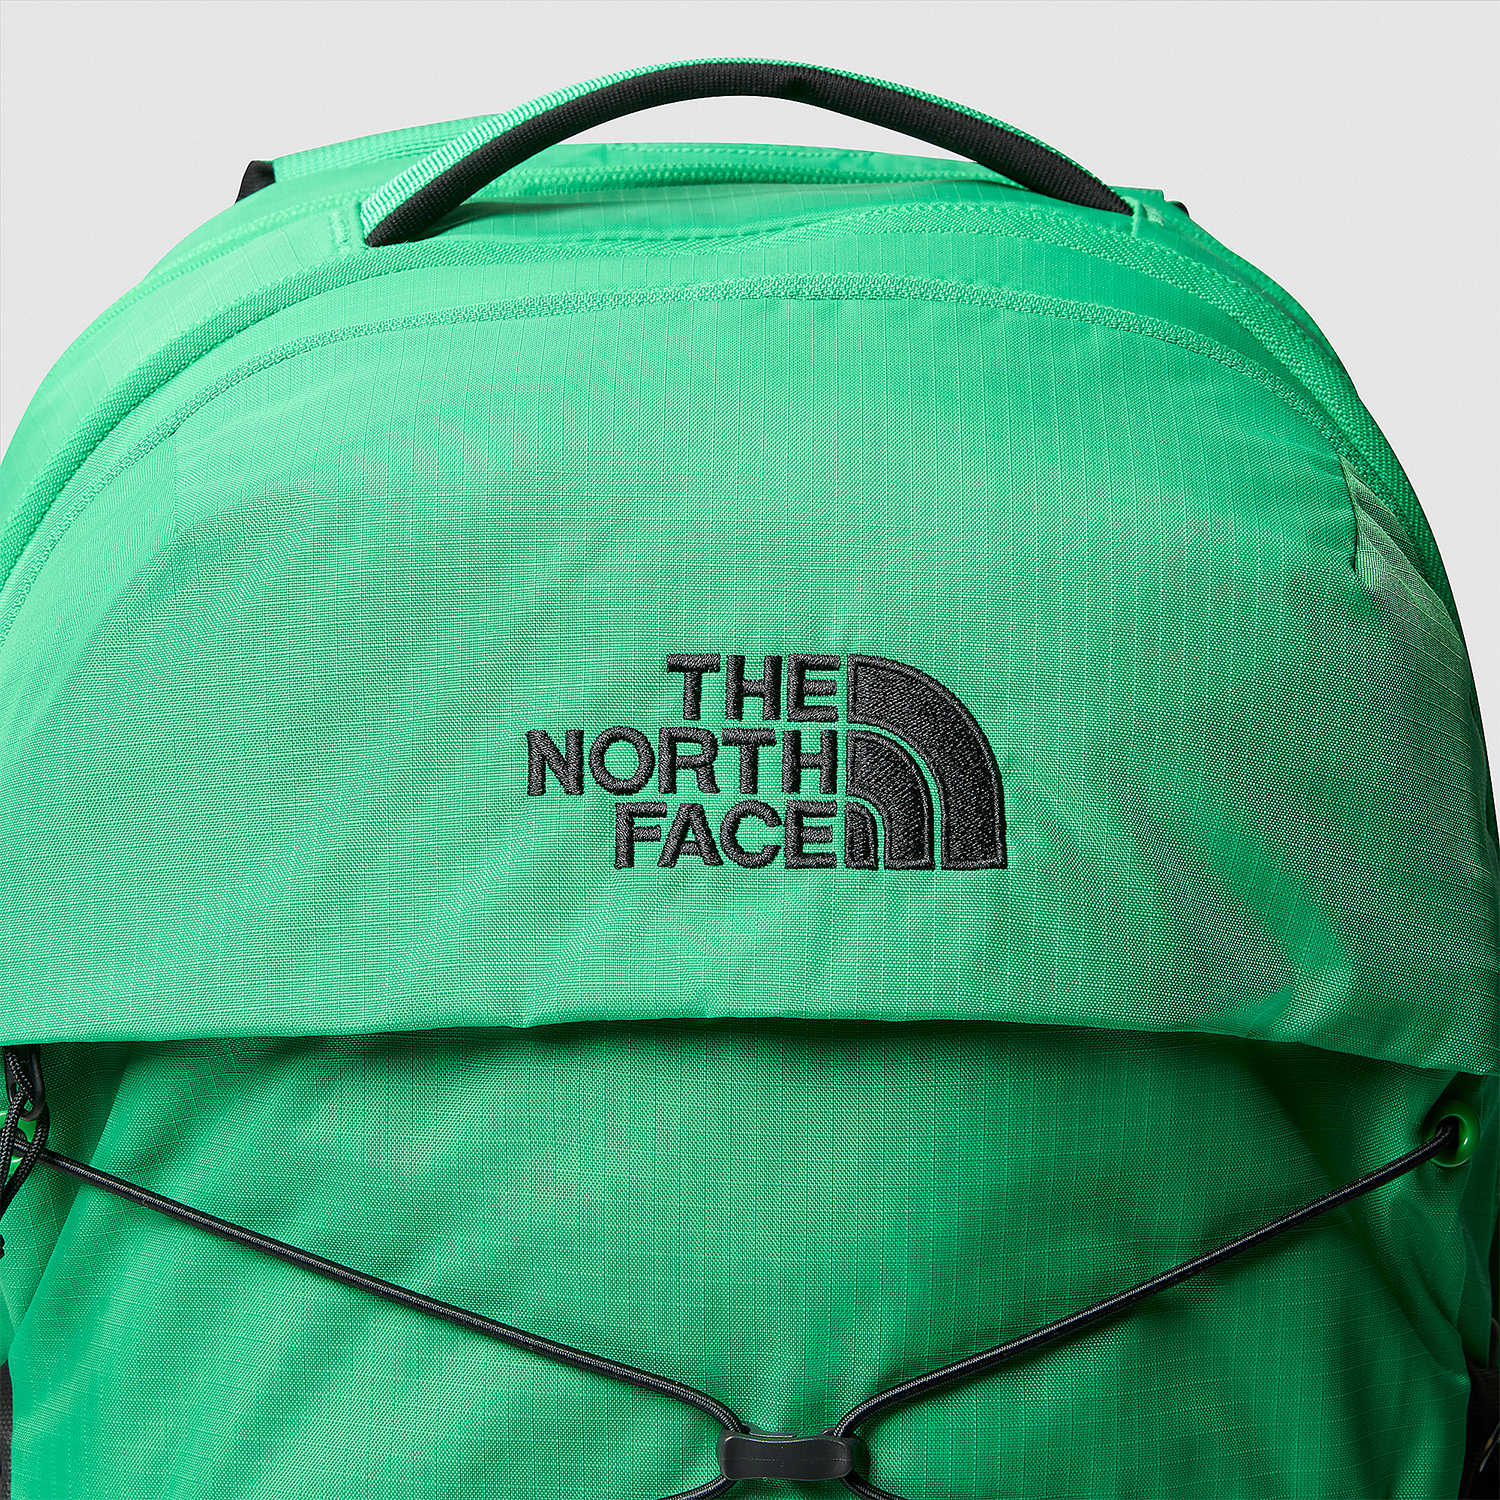 The North Face Borealis Mochila - Optic Emerald/TNF Black